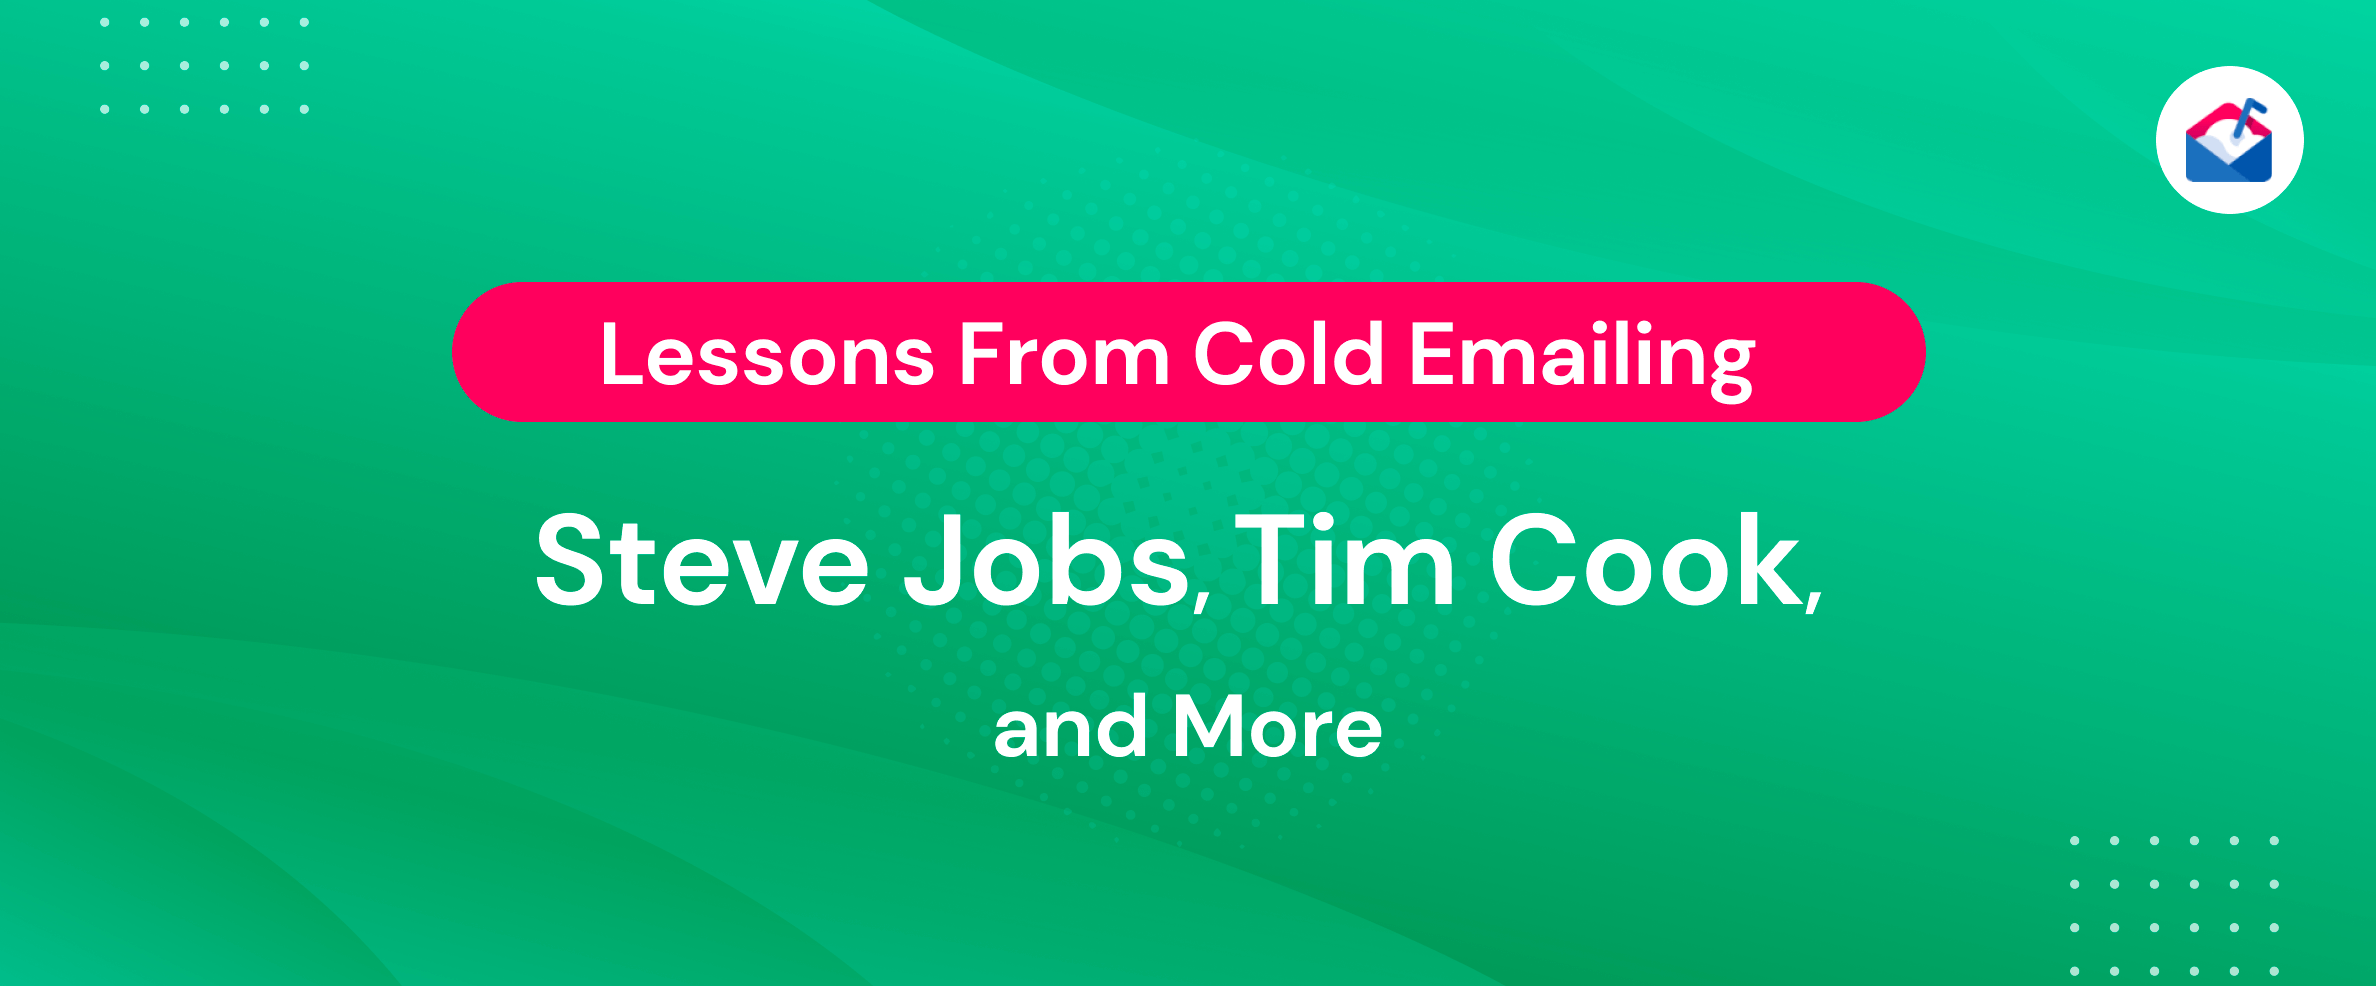 Lezioni dall'invio di e-mail a freddo a Steve Jobs, Tim Cook e altri